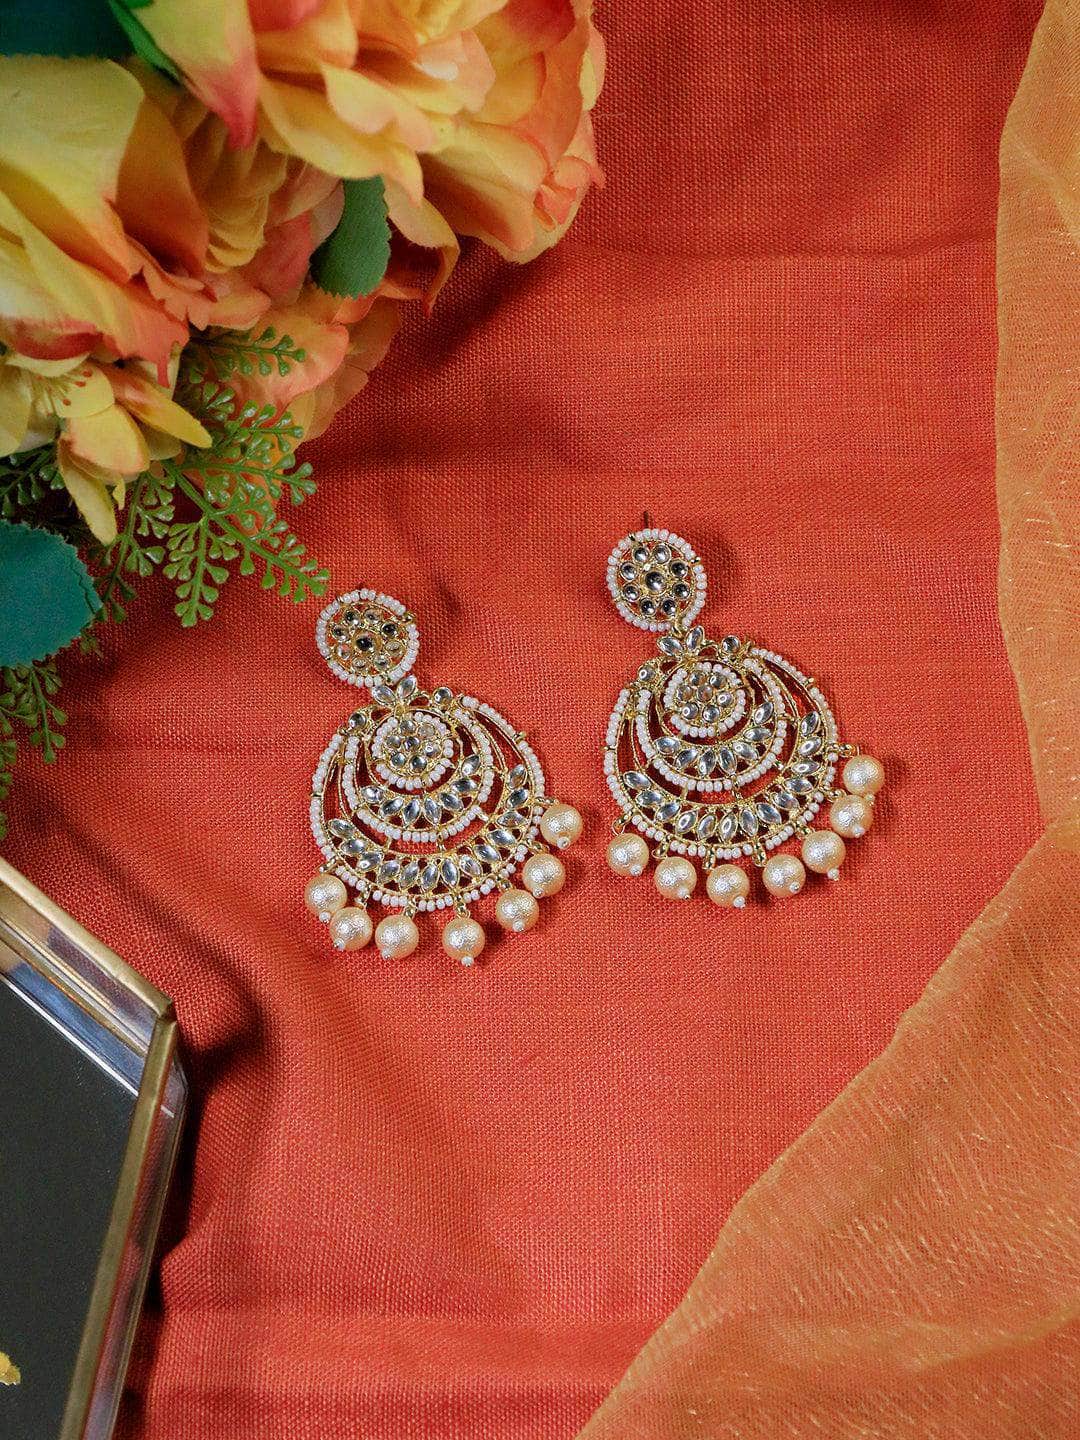 Ishhaara Megha Mathew in Kundan Chandbali Earrings With Pearls